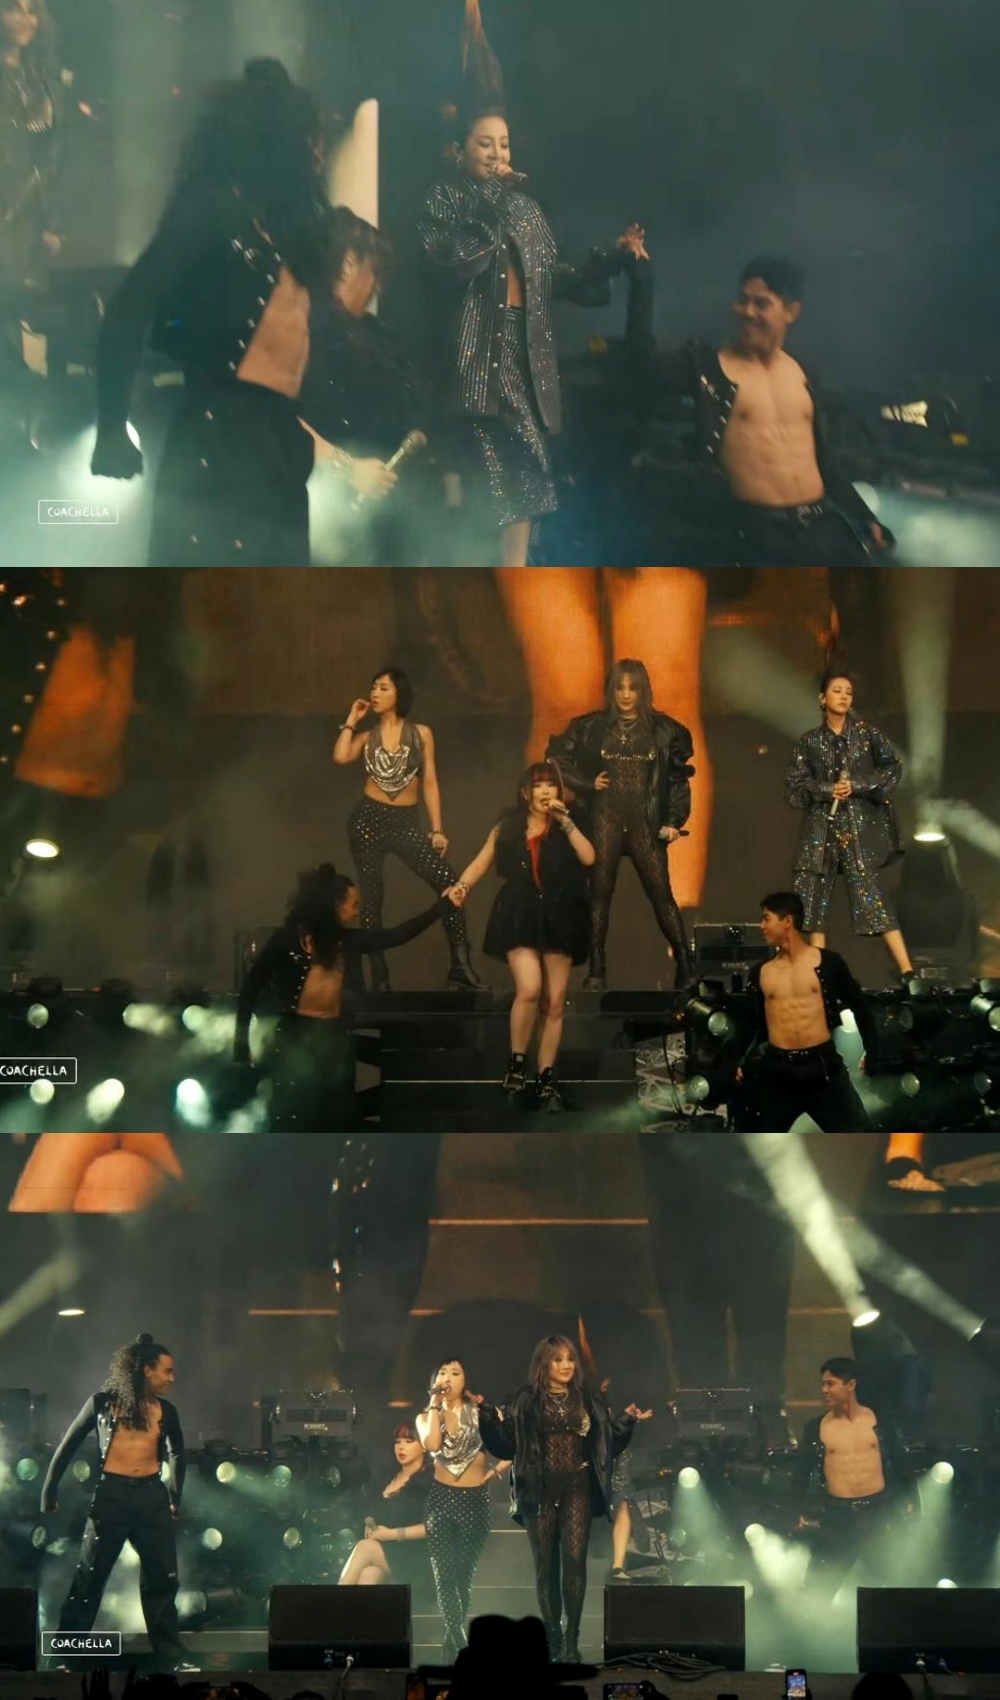  Dàn vũ công 6 múi giúp màn trình diễn của 2NE1 thêm sôi động, nóng bỏng. (Ảnh: Coachella)